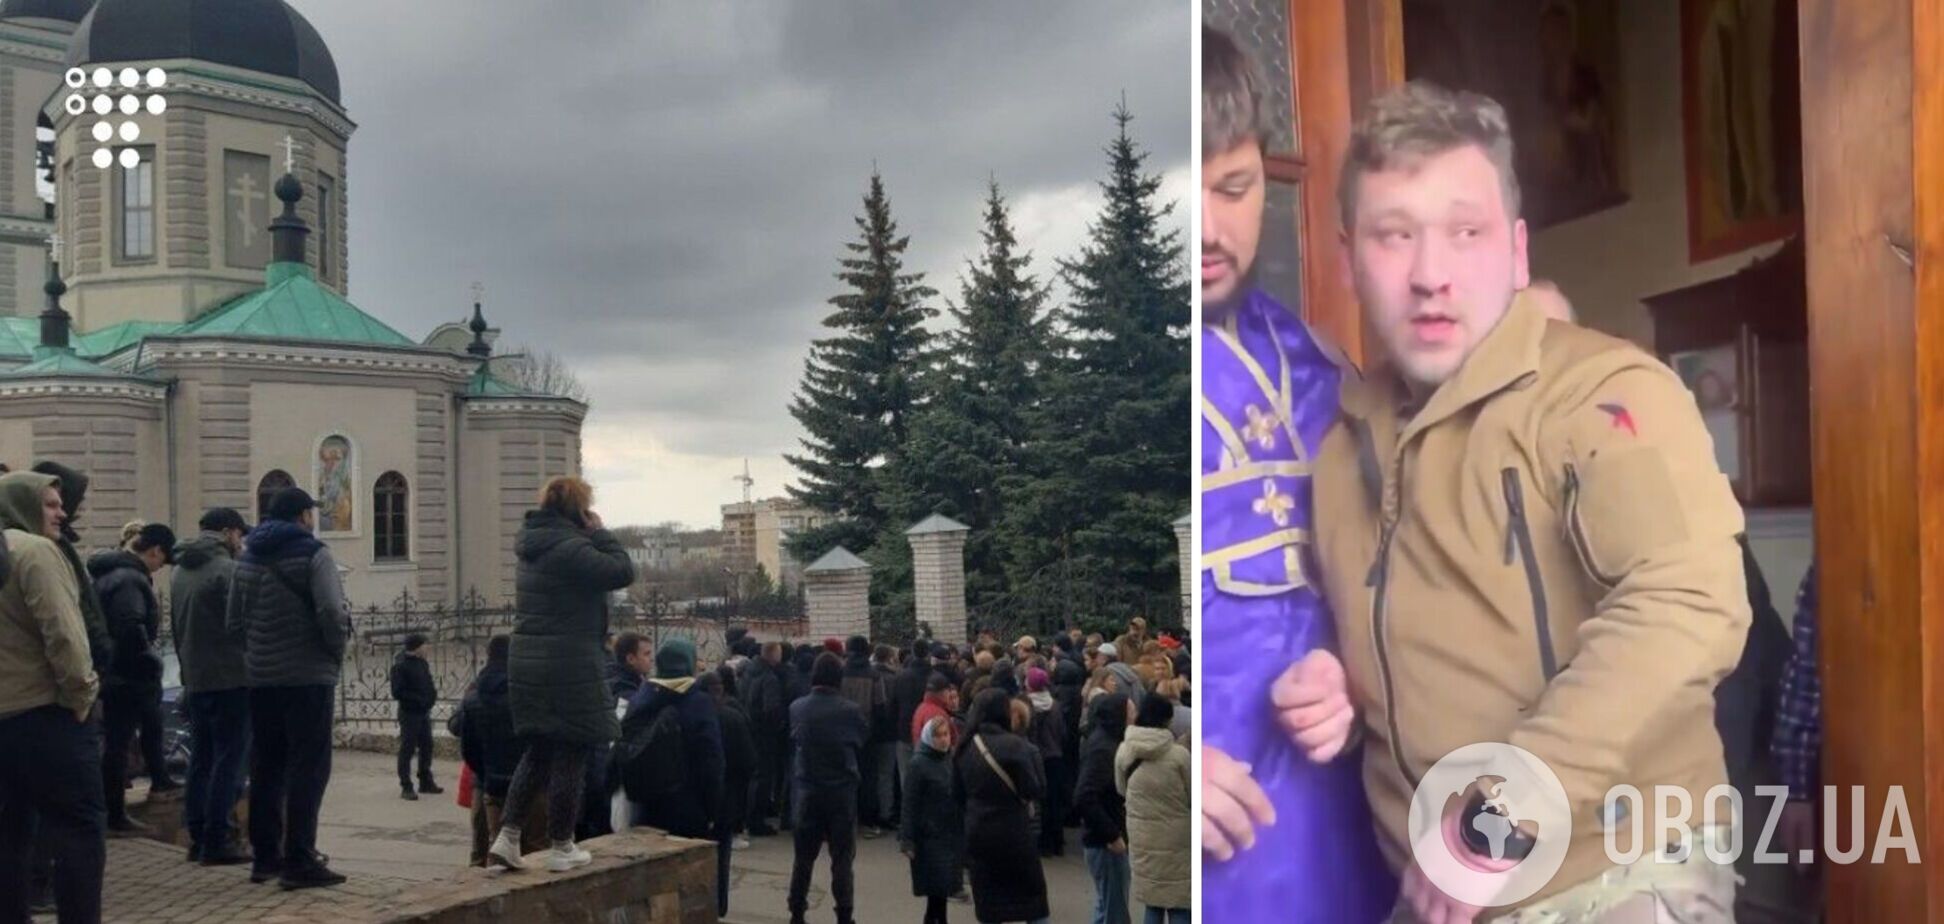 'Я не мог дышать, но поп сказал, ему все равно': экс-военный рассказал о нападении в храме МП в Хмельницком